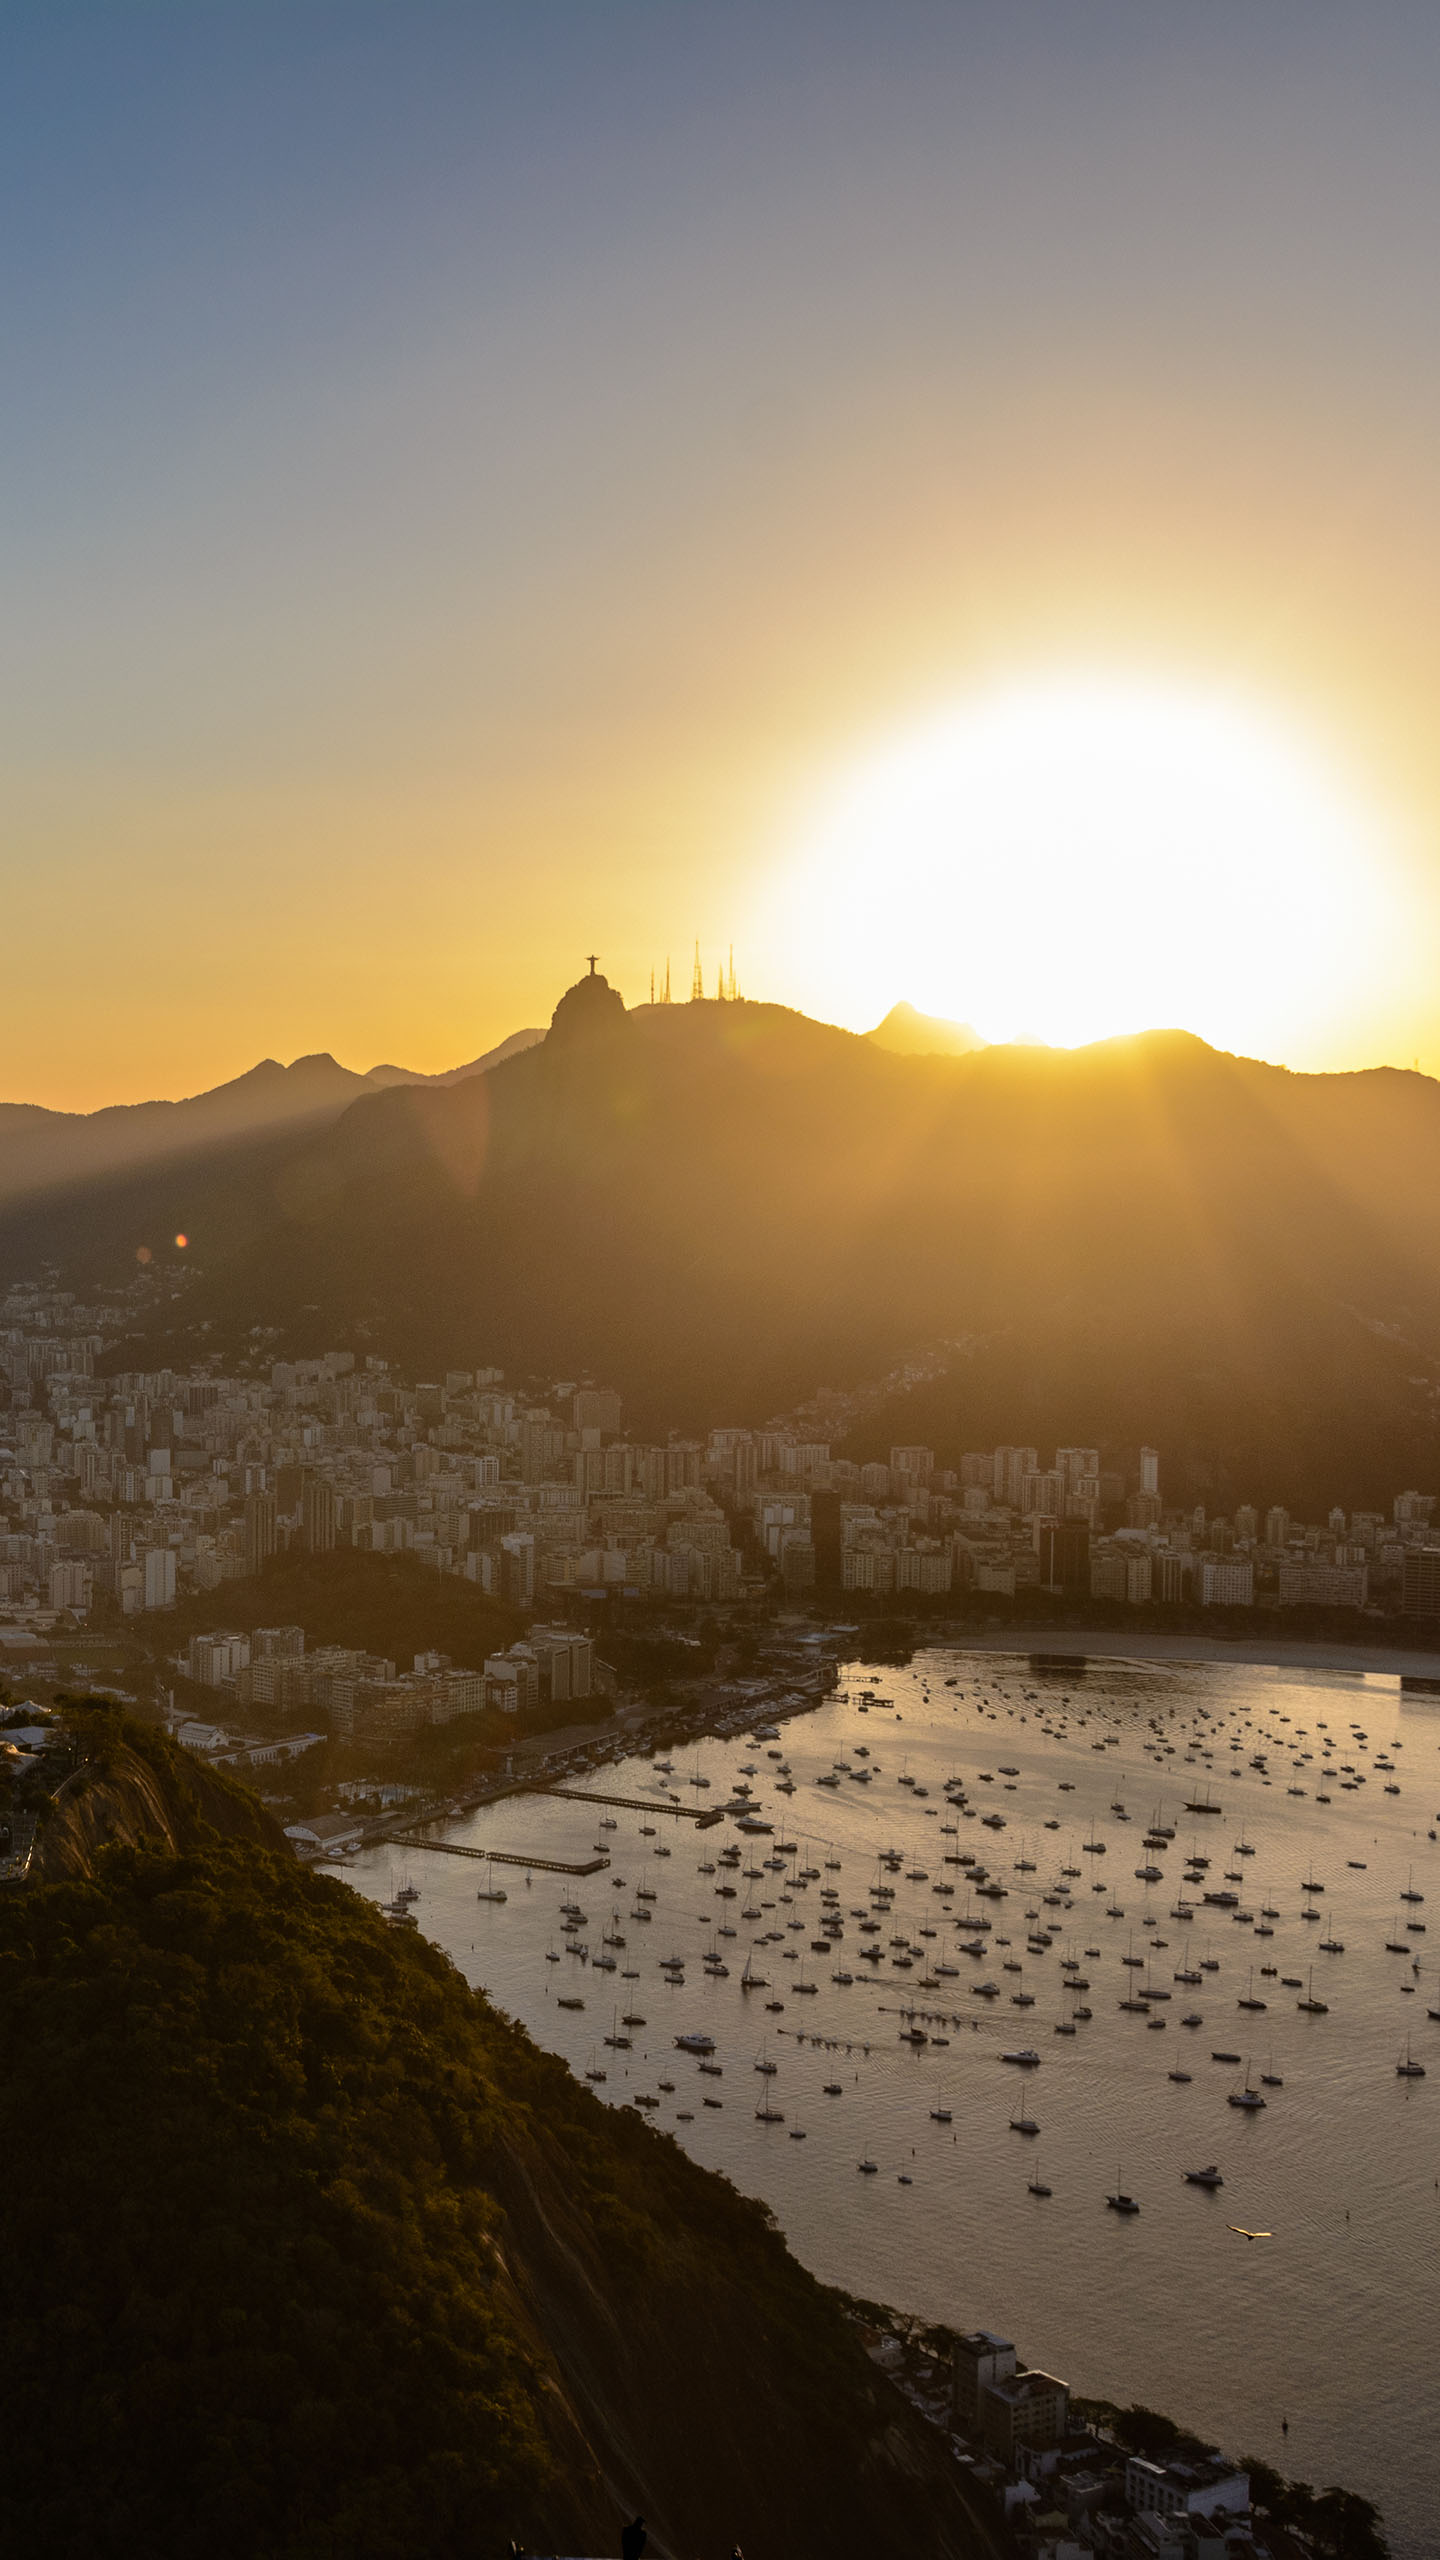 Brazil Wallpapers For Galaxy S7 Edge - Copacabana Beach - HD Wallpaper 